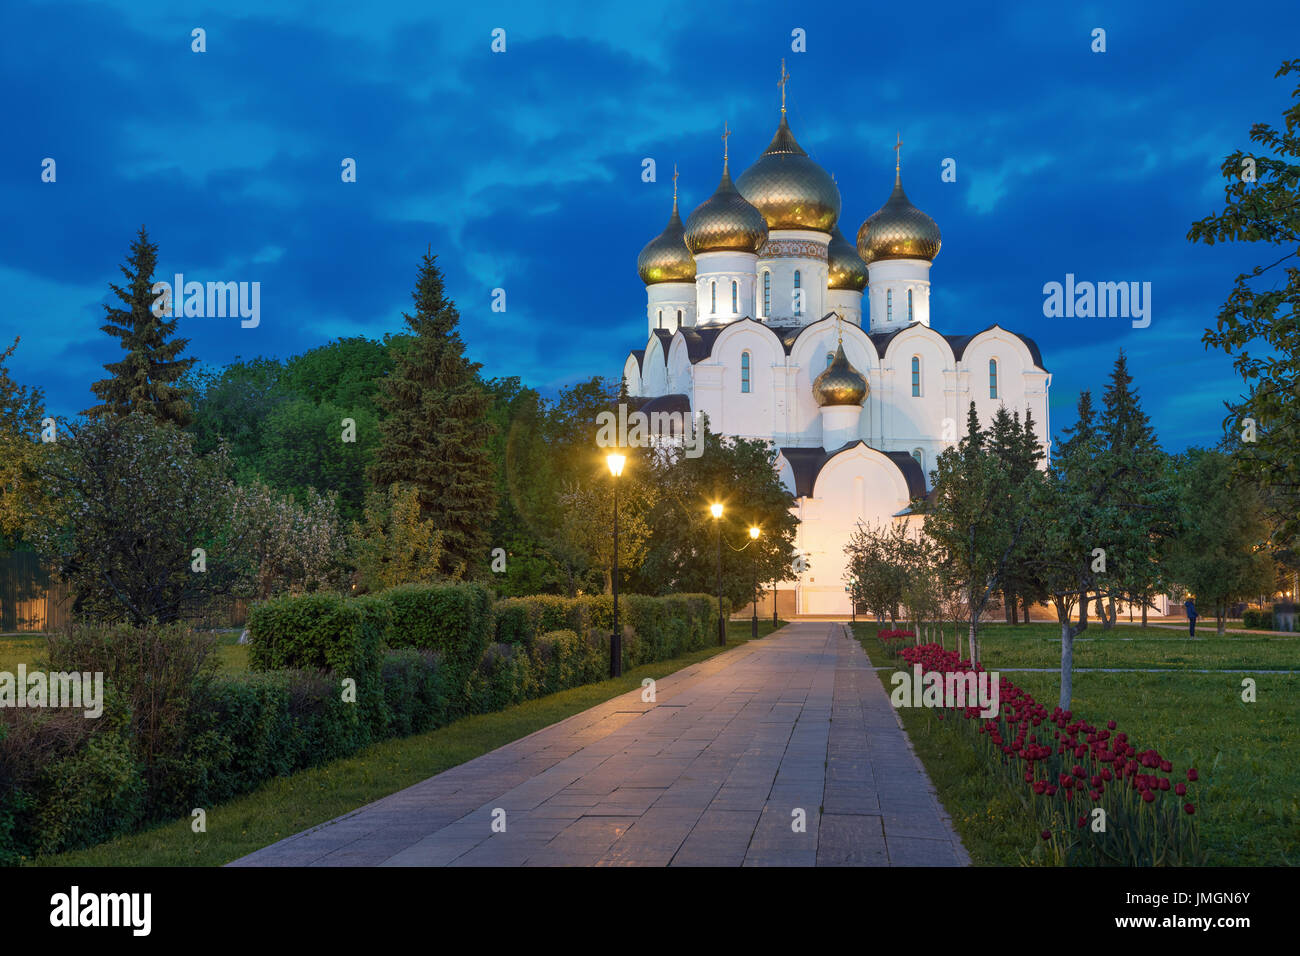 Uspenskiy cathédrale dans le soir, Iaroslavl, Russie Banque D'Images